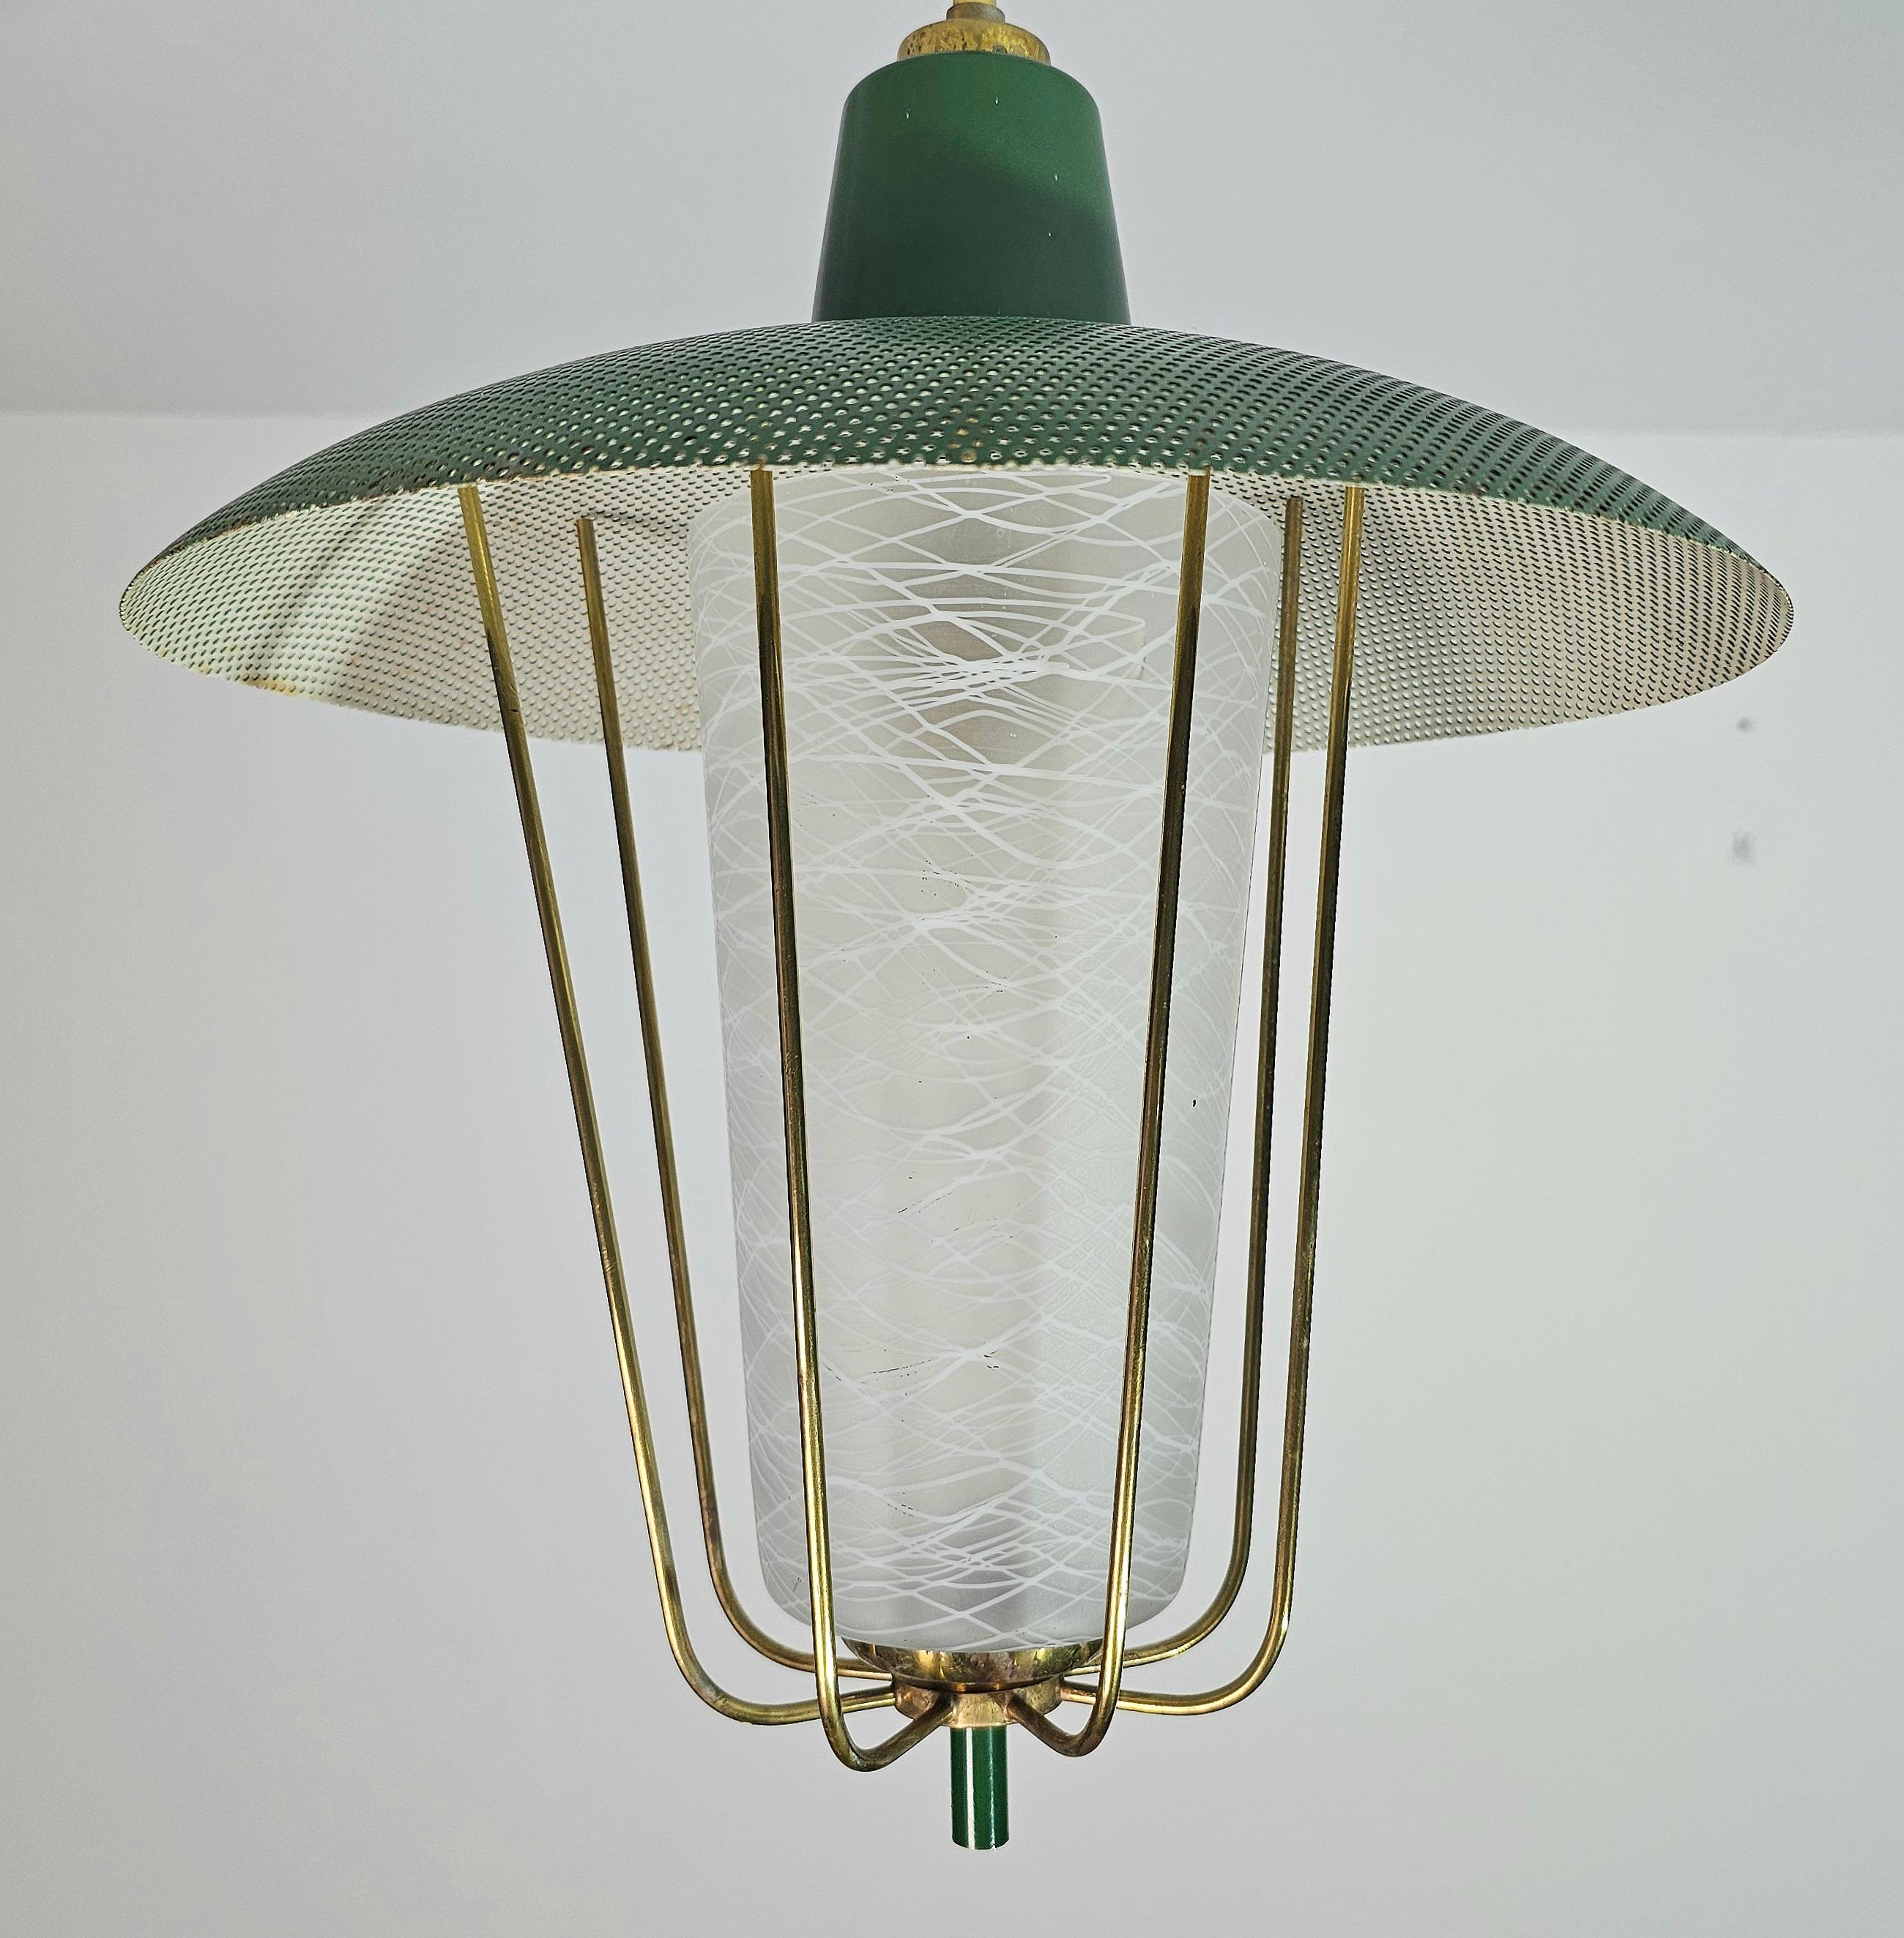 Enameled Pendant Chandelier Glass Brass Green Midcentury Modern Italian Design 1950s For Sale